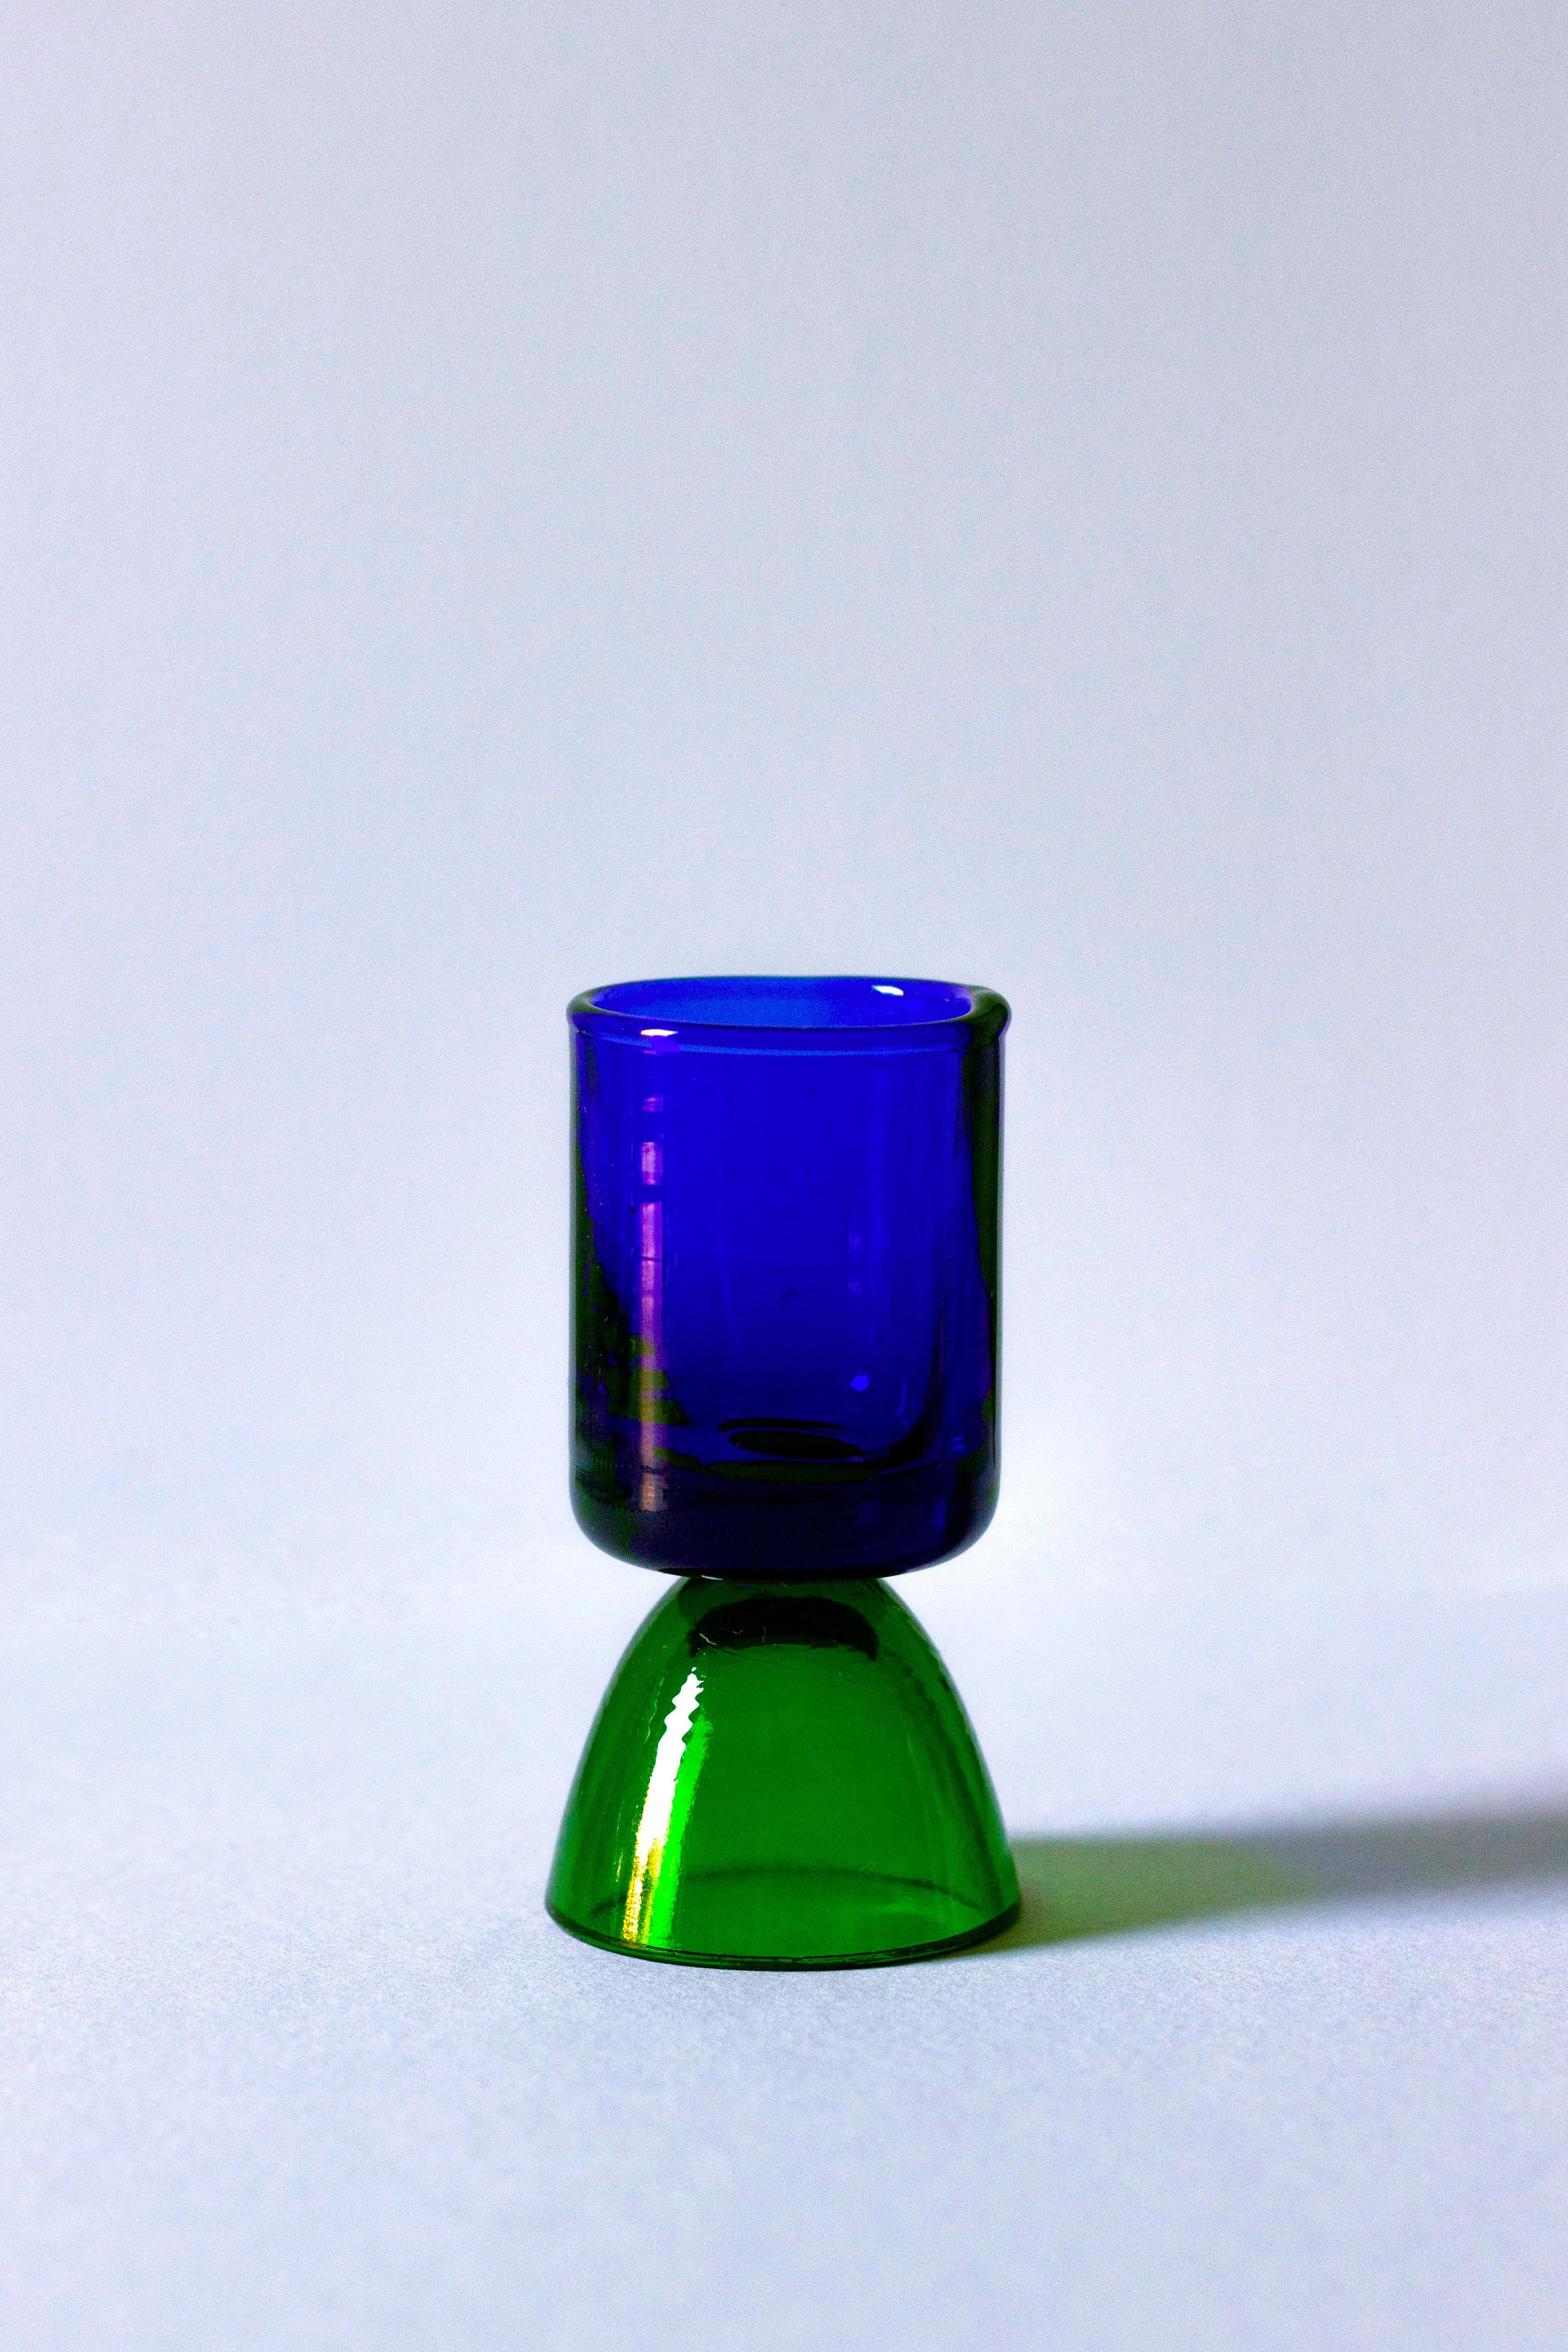 Genießen Sie einen Shot mit diesem Tequila-Glas, das in der Toskana von erfahrenen Handwerkern handgefertigt wurde. Dieses blau/grüne Glas aus der Wonder Crystals Collection eignet sich ideal für den Genuss von Tequila, Mezcal oder anderen edlen